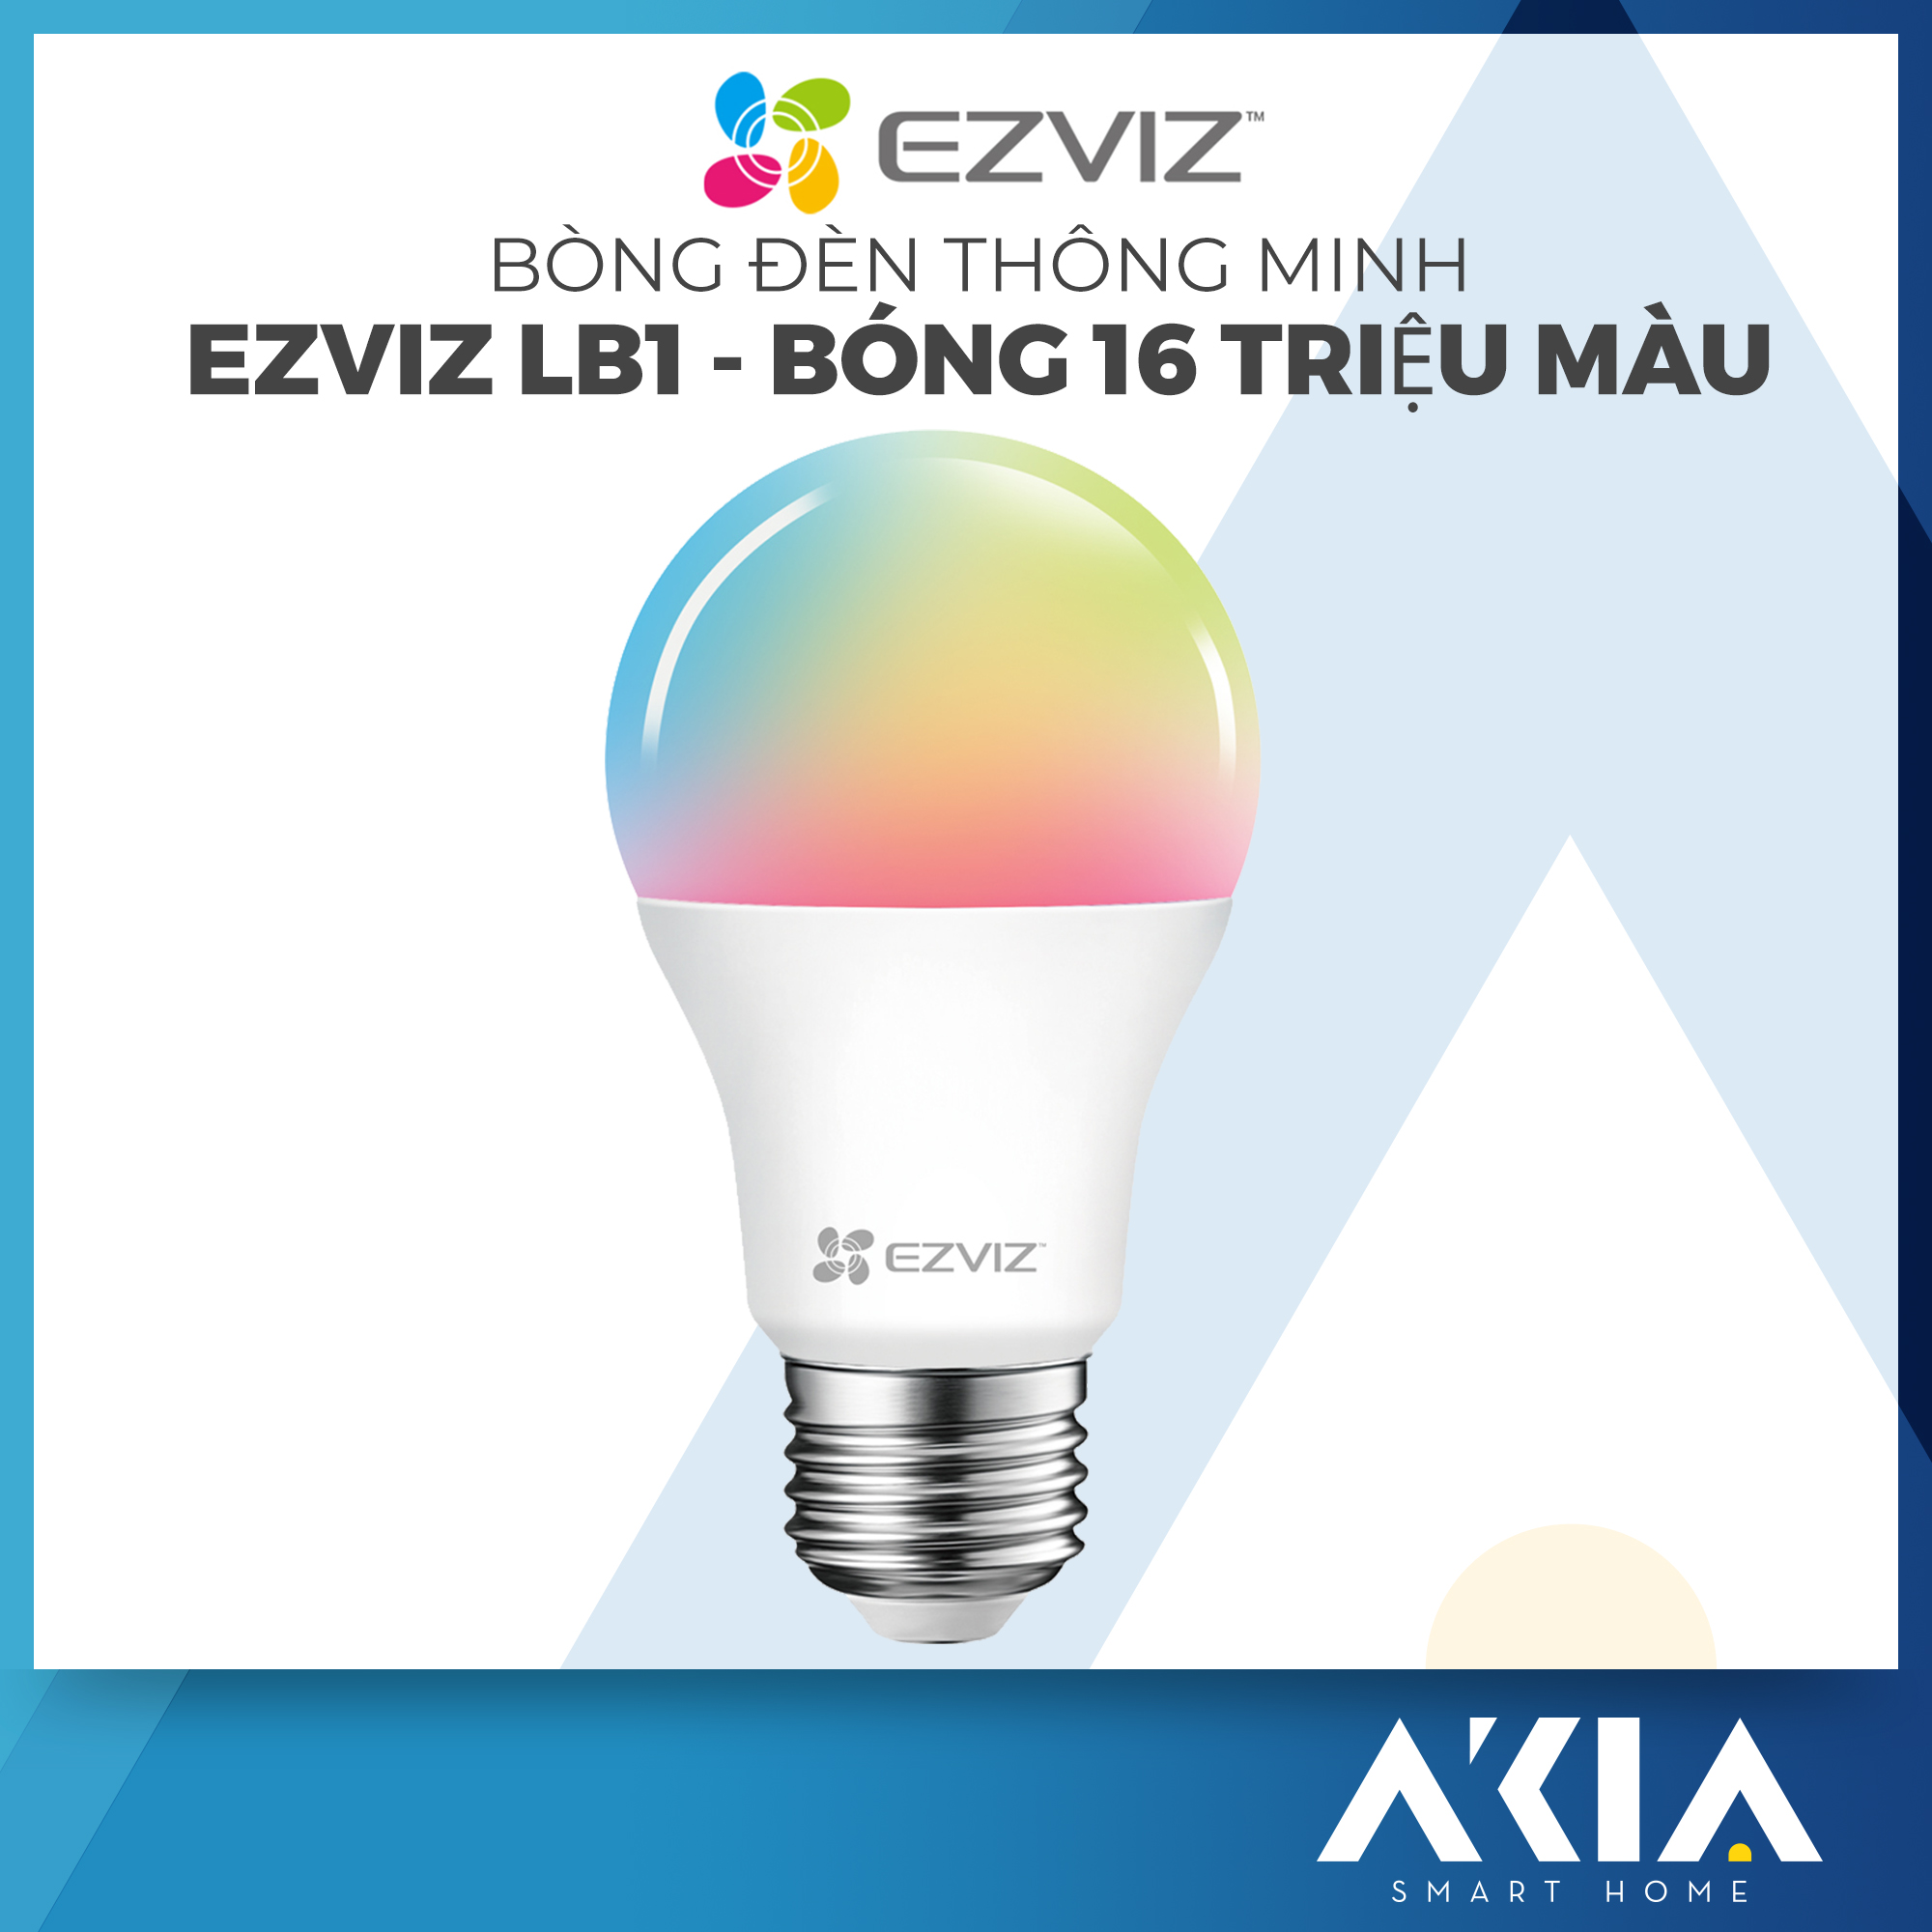 Bóng đèn thông minh Ezviz LB1 điều chỉnh độ sáng và nhiệt màu